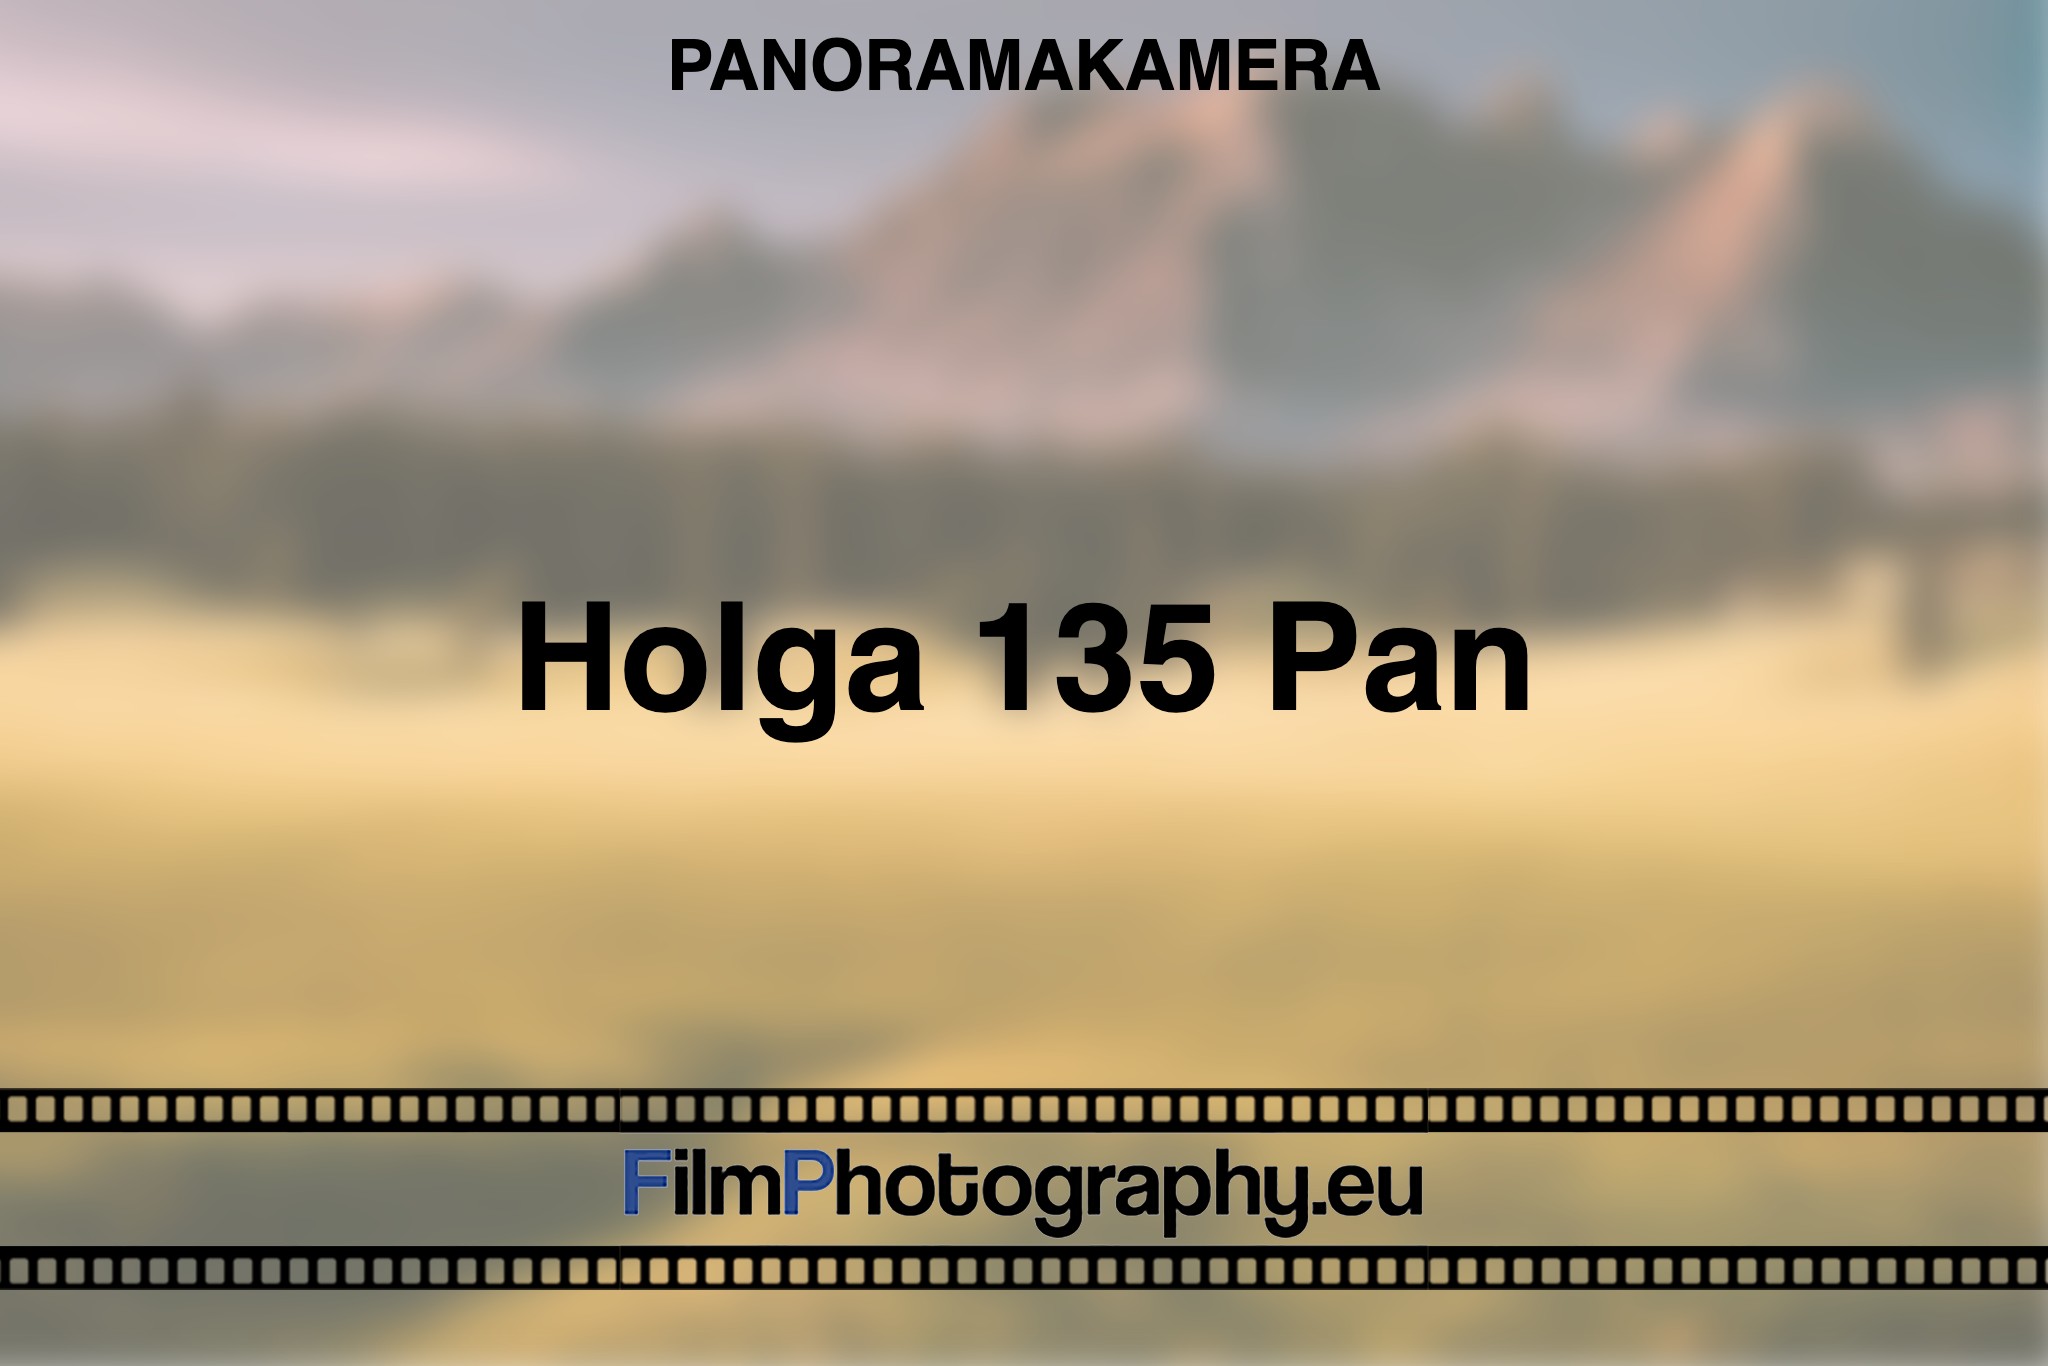 holga-135-pan-panoramakamera-bnv